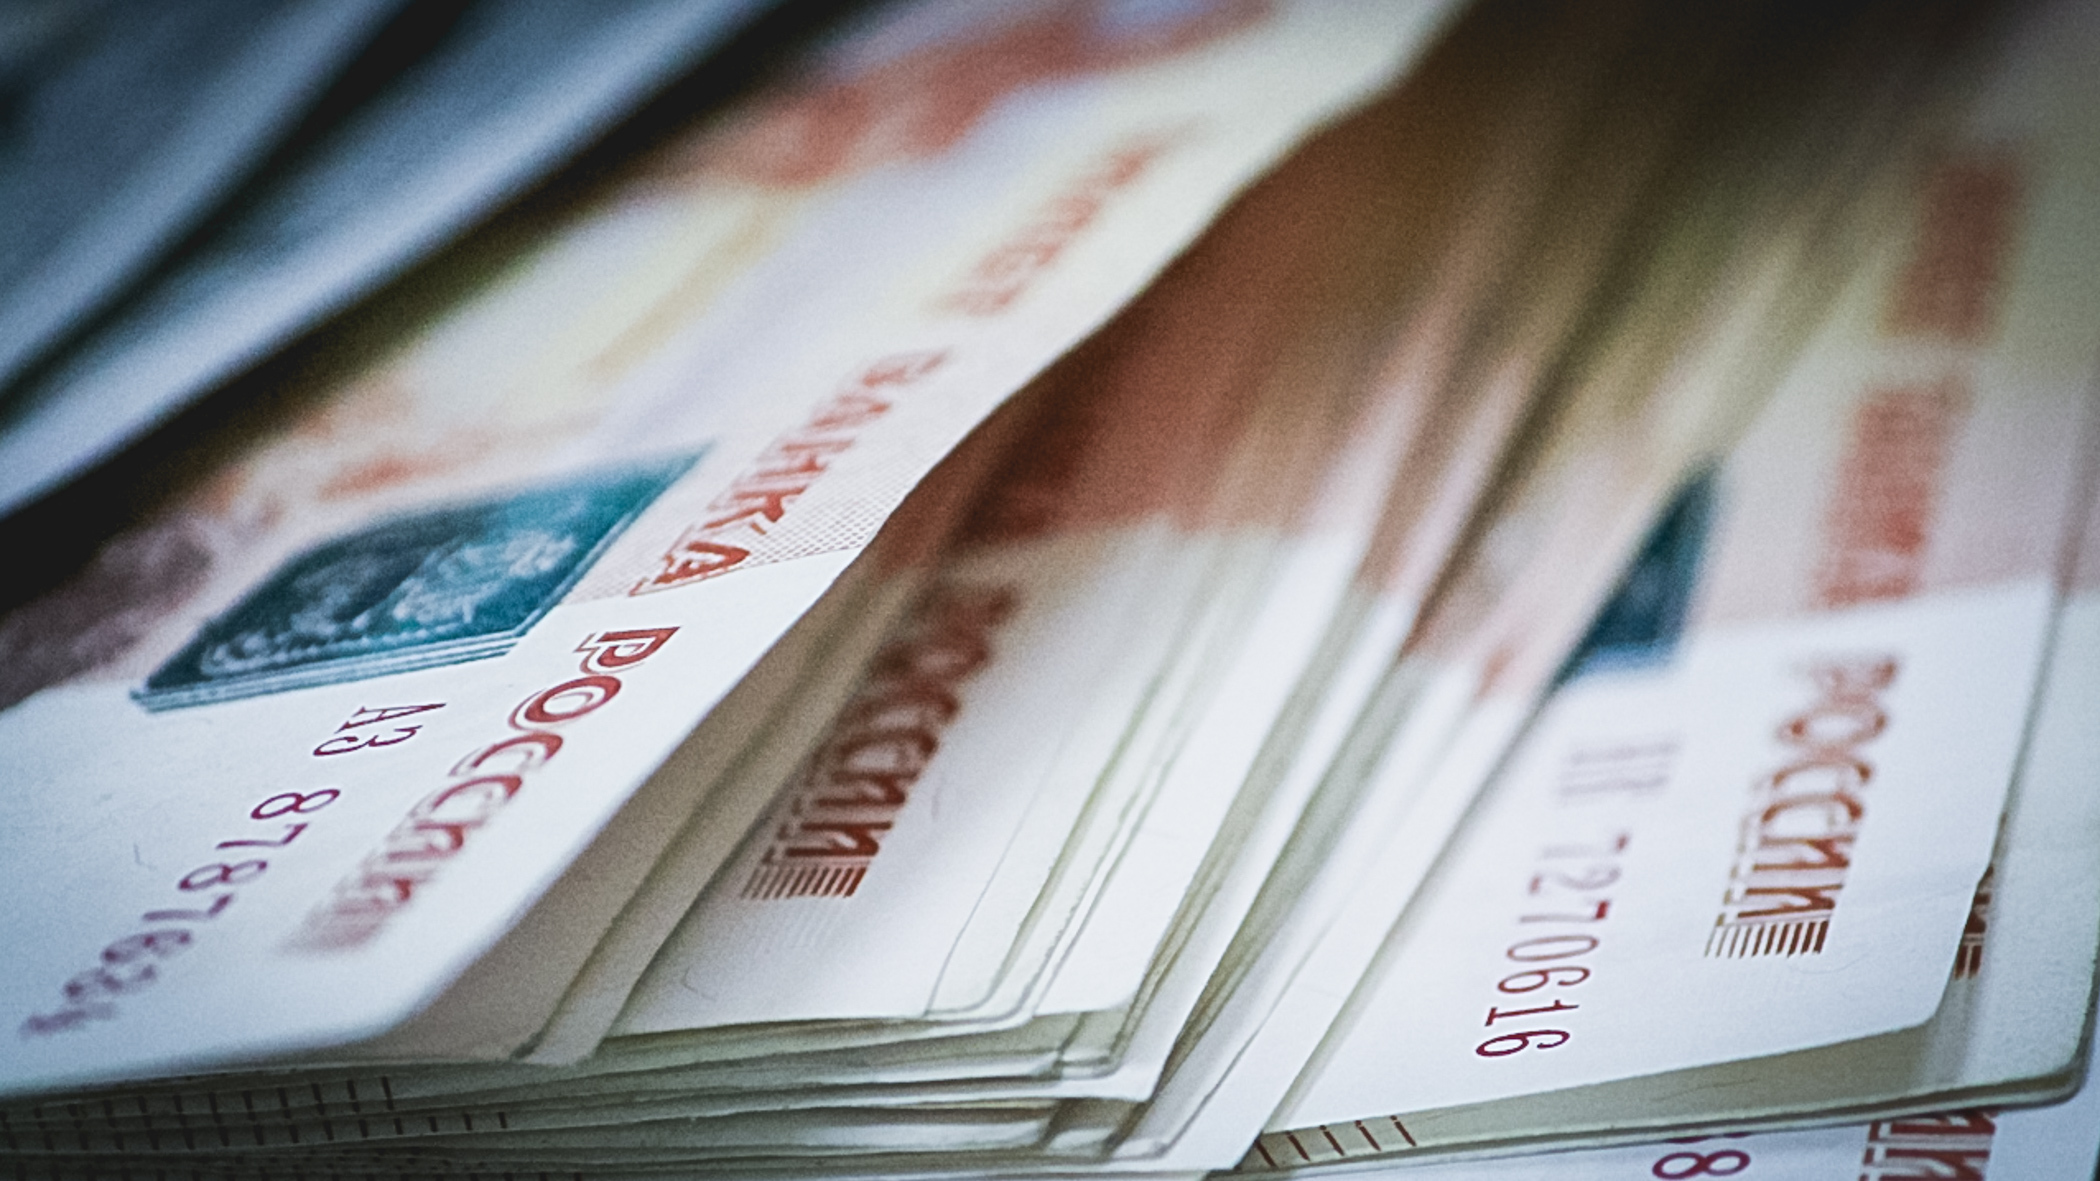 Ещё 20 млн рублей арестованы на счетах в кредитной компании.